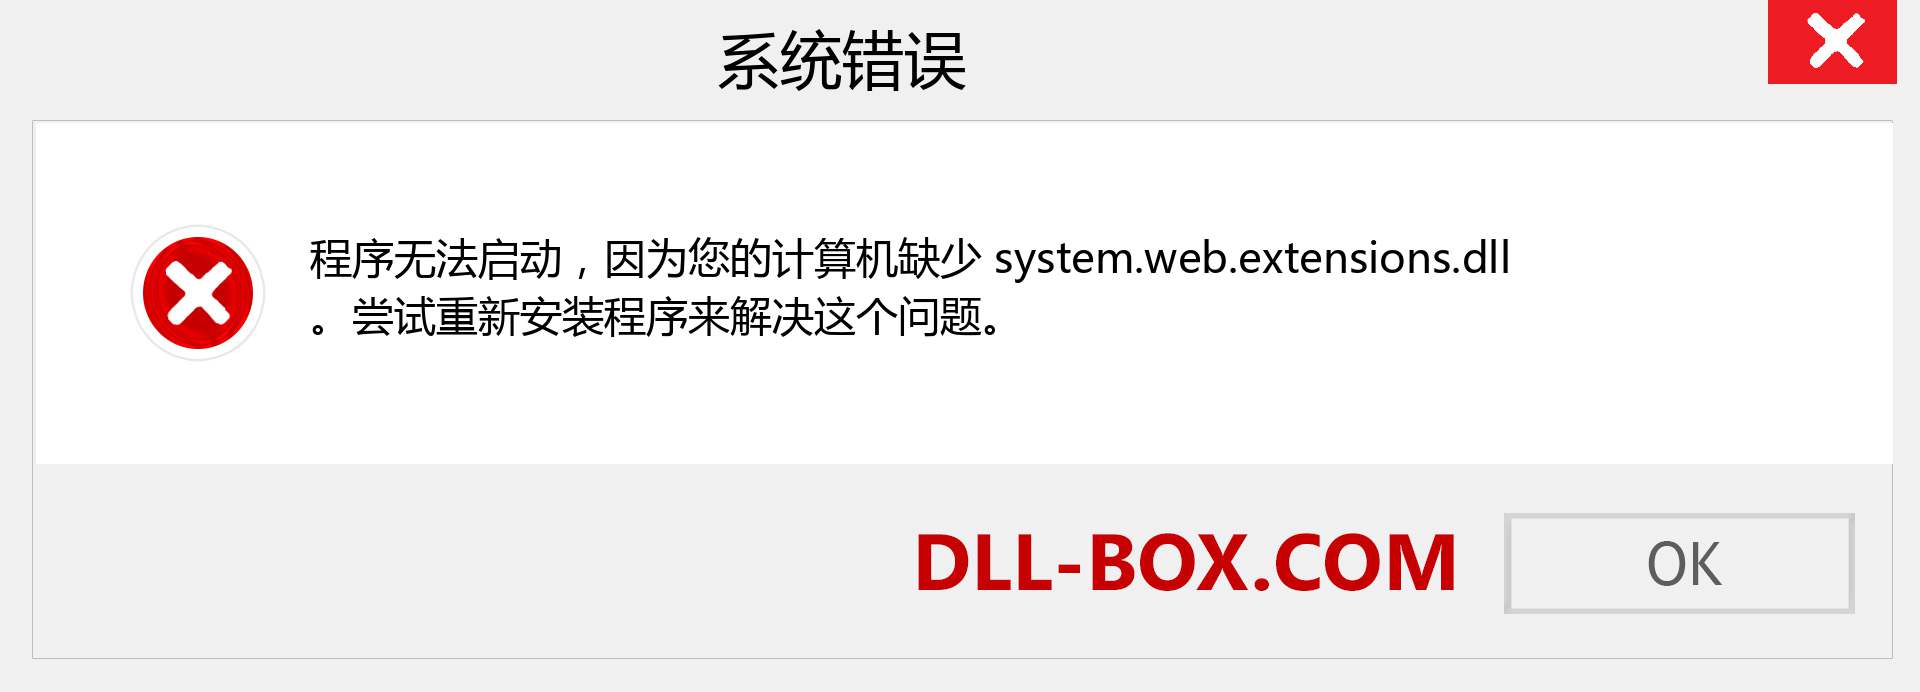 system.web.extensions.dll 文件丢失？。 适用于 Windows 7、8、10 的下载 - 修复 Windows、照片、图像上的 system.web.extensions dll 丢失错误